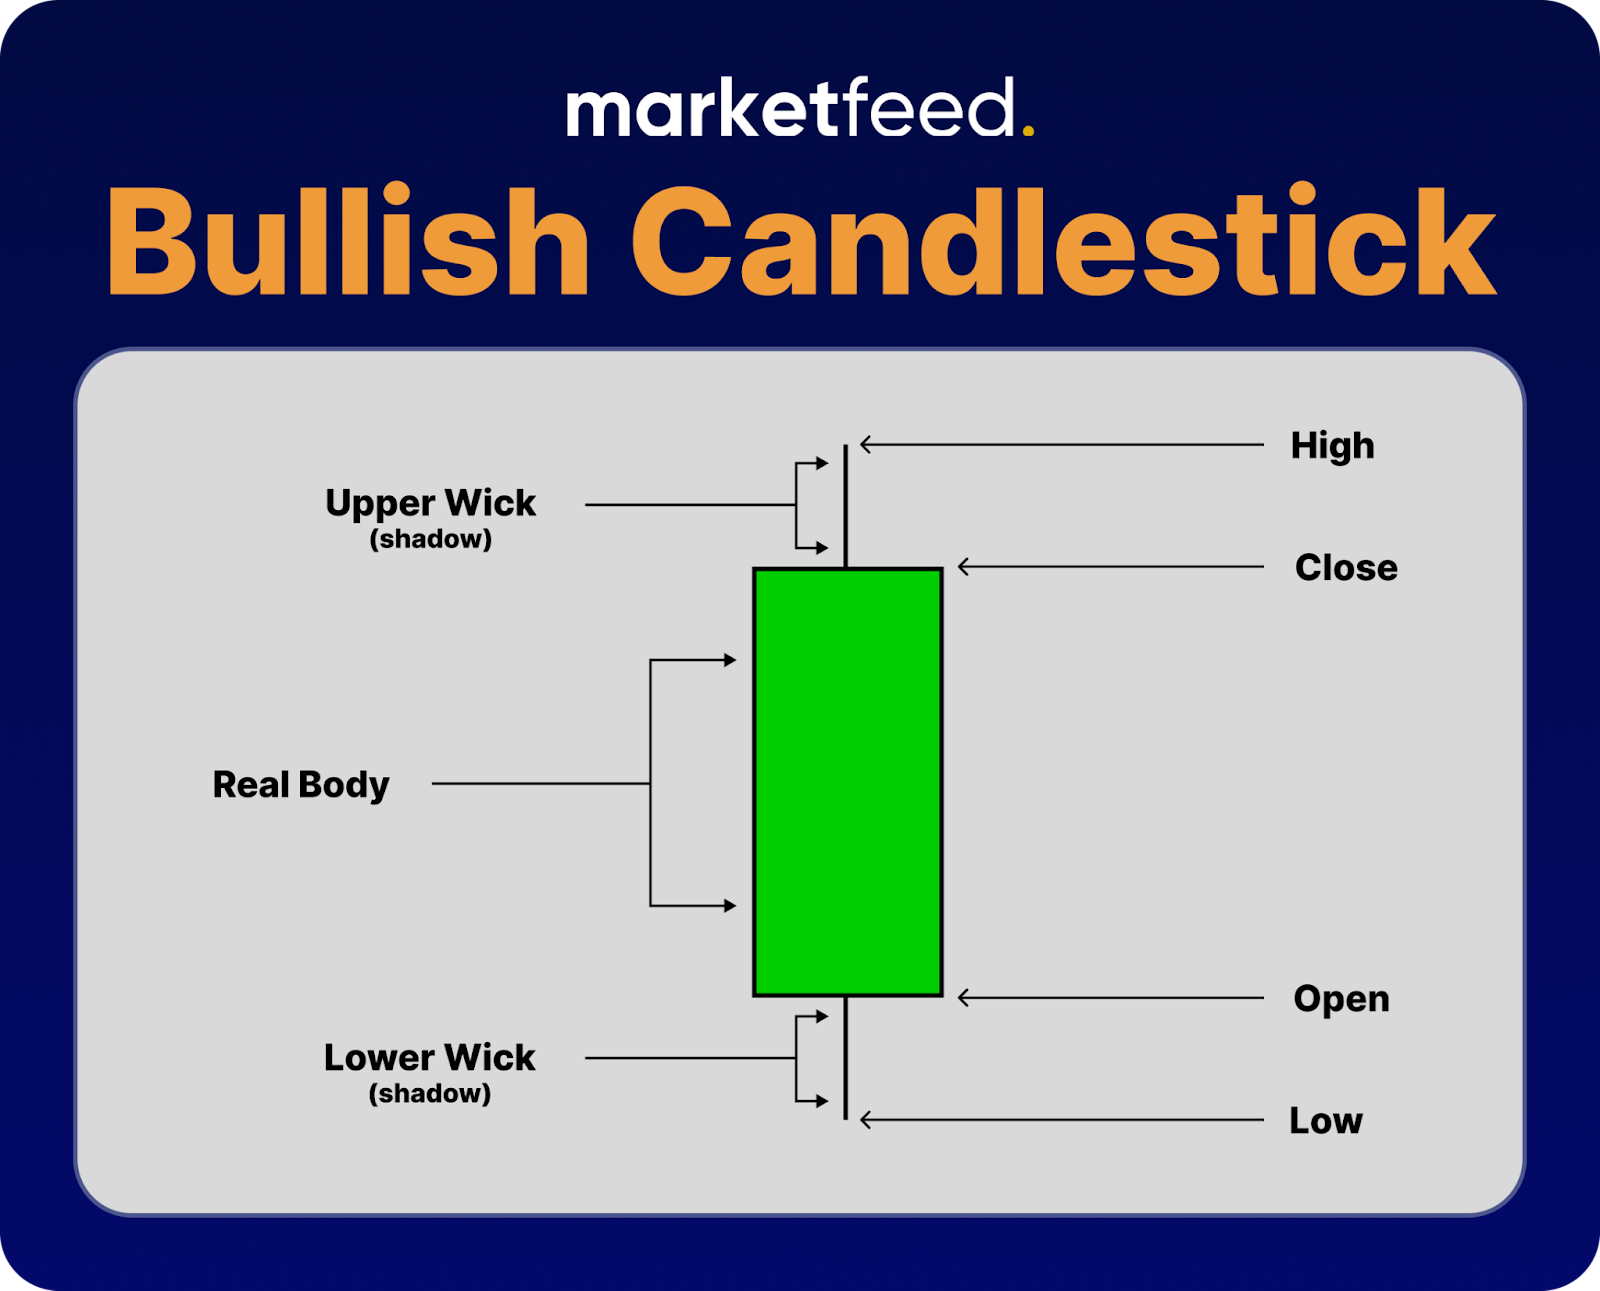 Bullish Candlestick | marketfeed